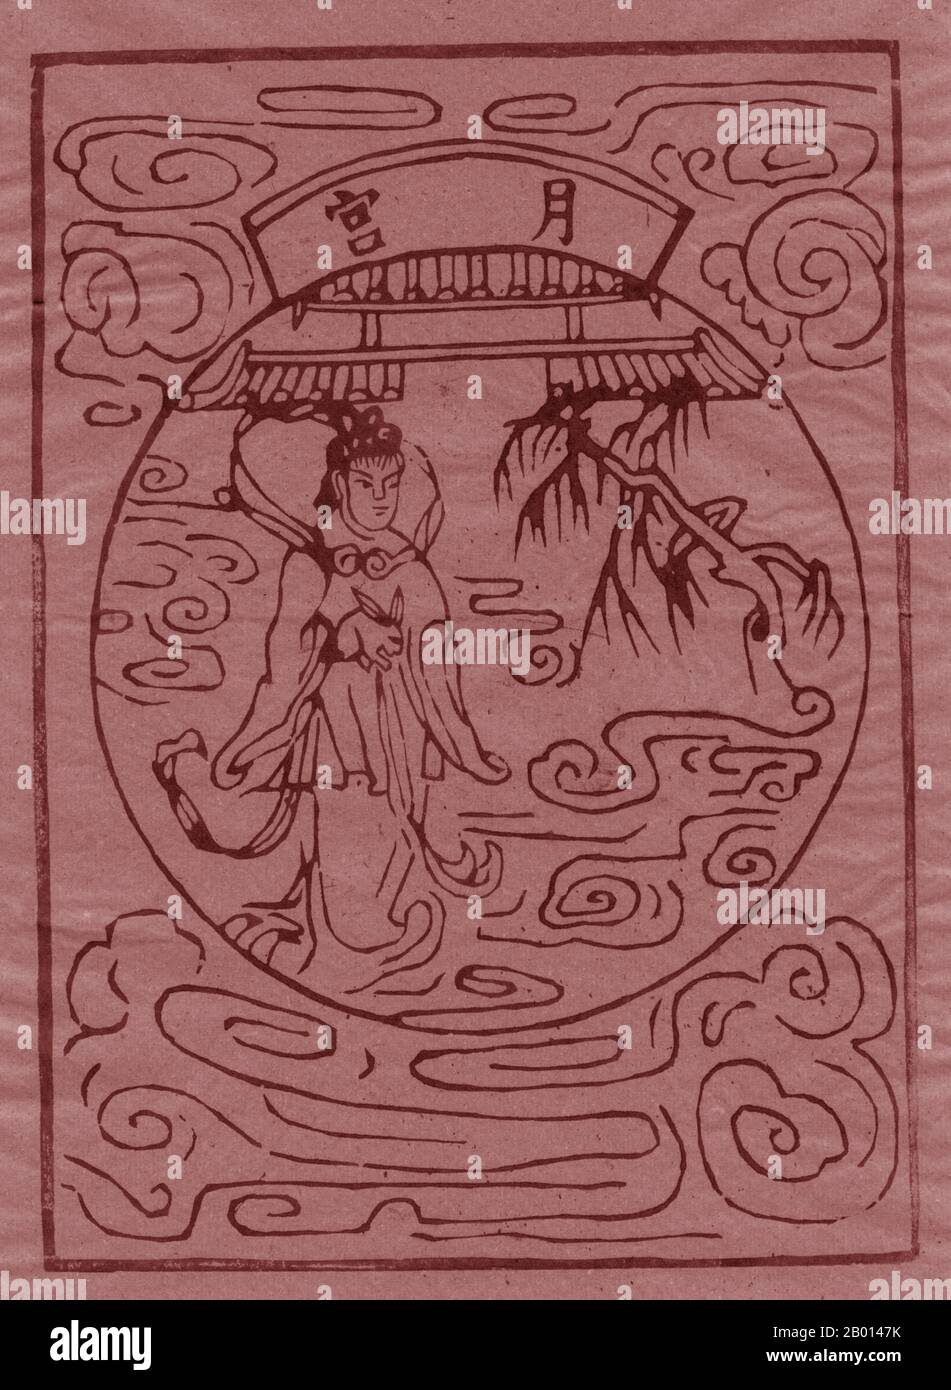 Cina: Divinità Daoista Chang-e che ha rubato l'elisir dell'immortalità. Stampa in blocco di legno, 20 ° secolo. Chang'e, CH'ang-o, Chang-NGO o Sheung NGO, originariamente nota come Heng'e o Heng-o, è la dea cinese della luna. A differenza di molte divinità lunari in altre culture che personificano la luna, Chang'e vive solo sulla luna. Chang'e è il soggetto di numerose leggende della mitologia cinese, la maggior parte delle quali incorpora alcuni dei seguenti elementi: Suo marito Houyi l'Arciere, un imperatore benevolo o malevolo, un elisir di vita, e effettivamente la luna. Foto Stock